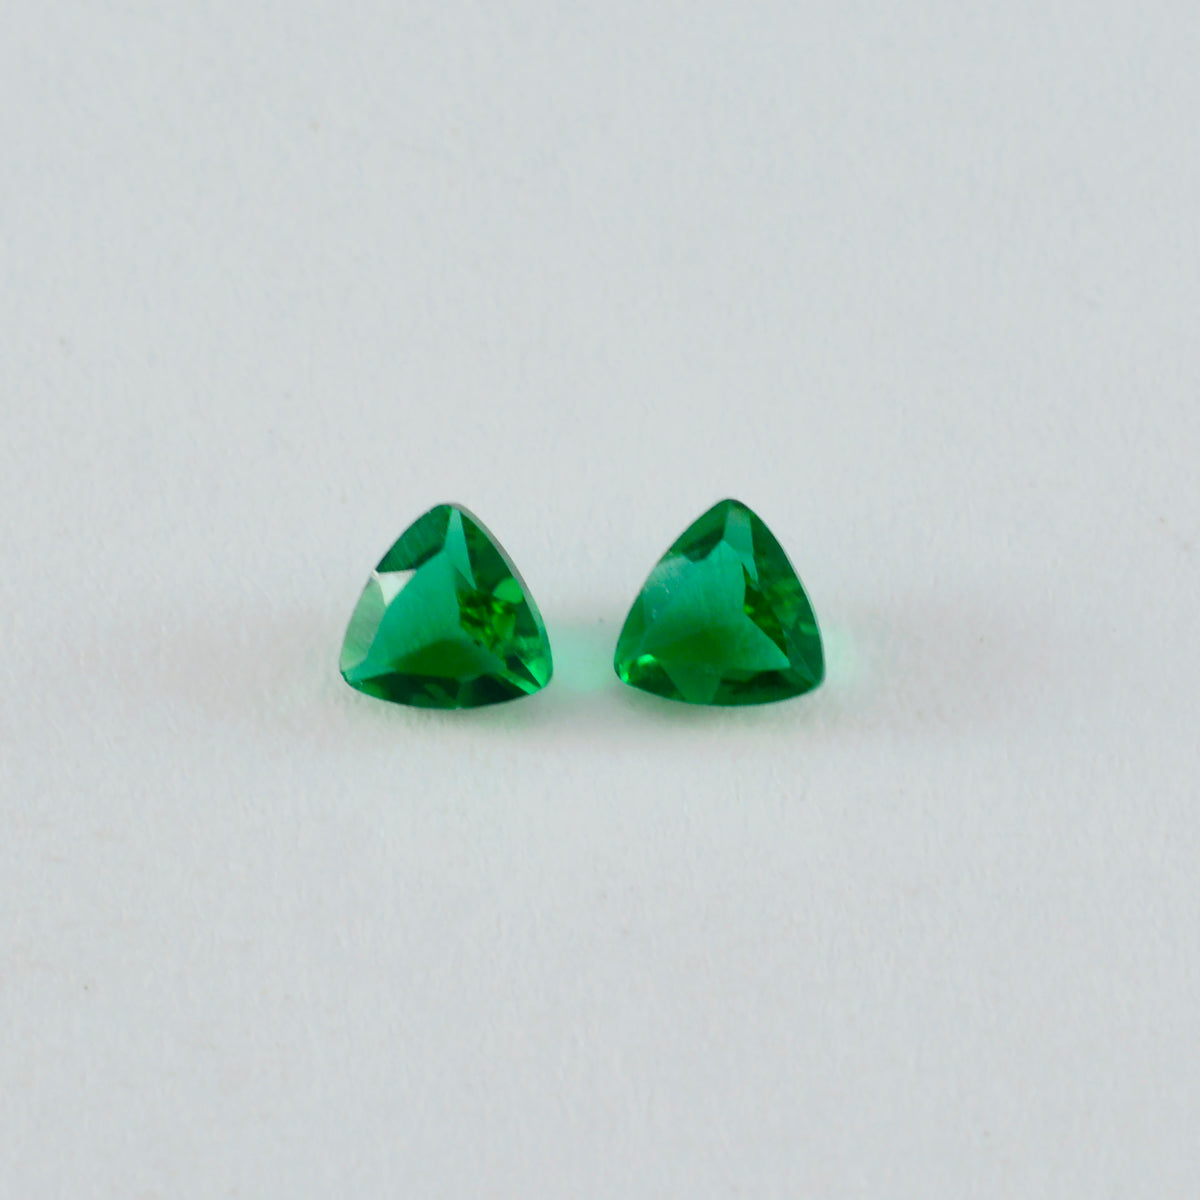 Riyogems 1 Stück grüner Smaragd, CZ, facettiert, 9 x 9 mm, Billionenform, süßer, hochwertiger loser Stein